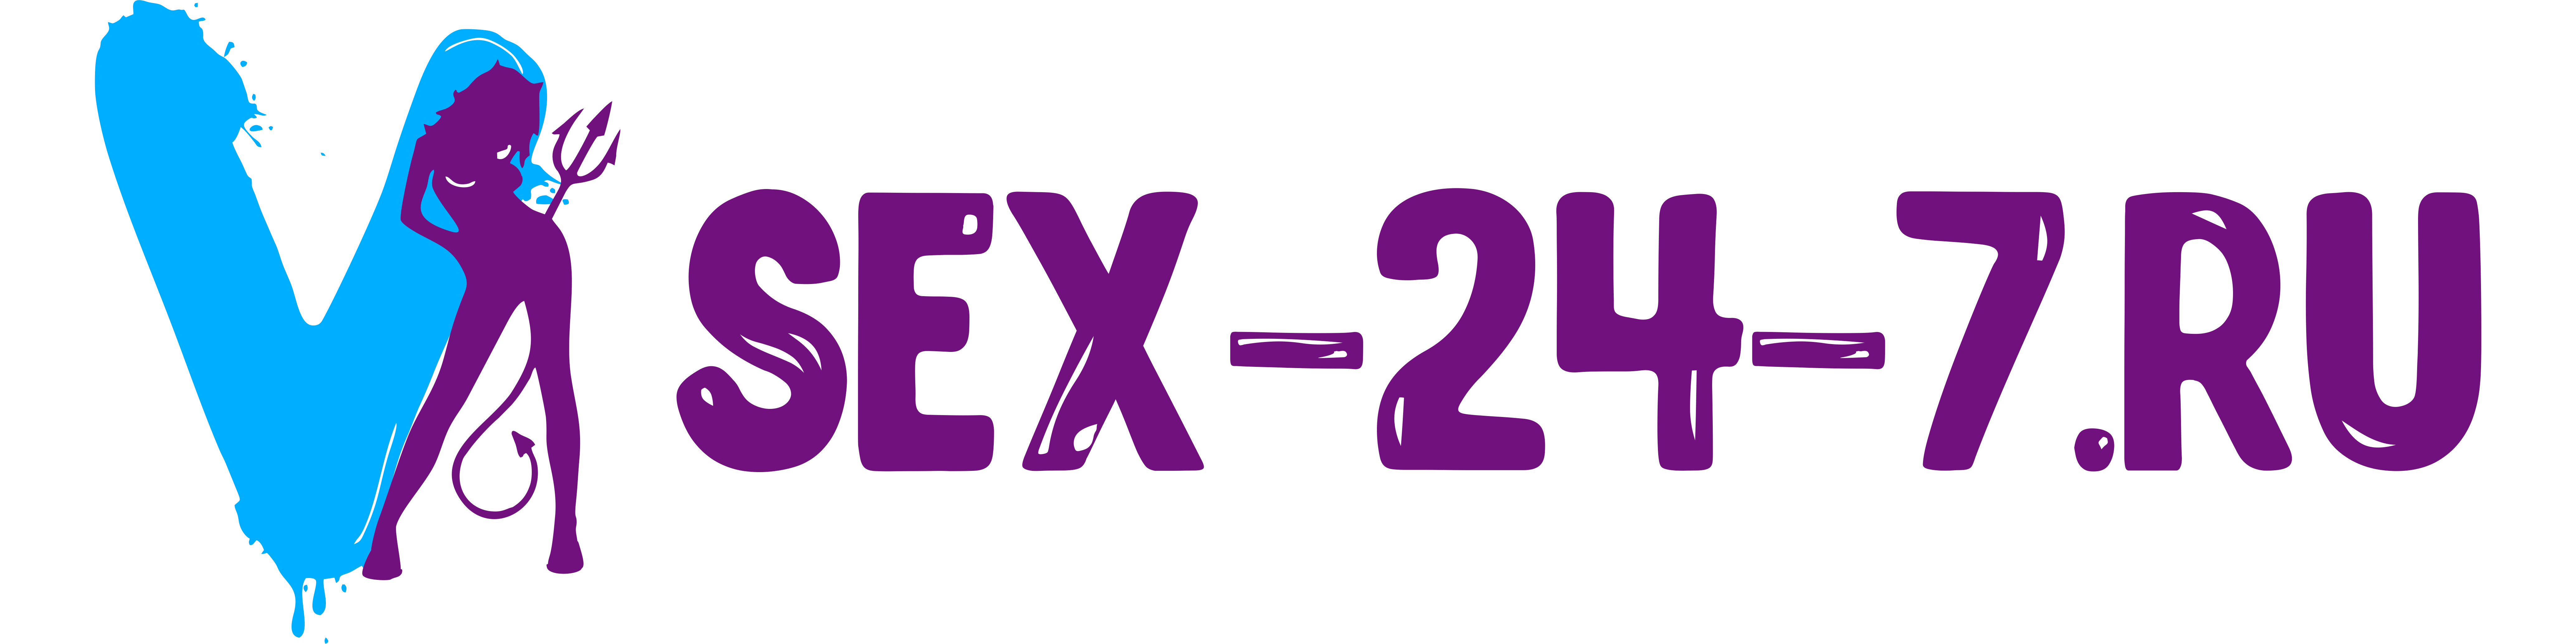 Sex24-7